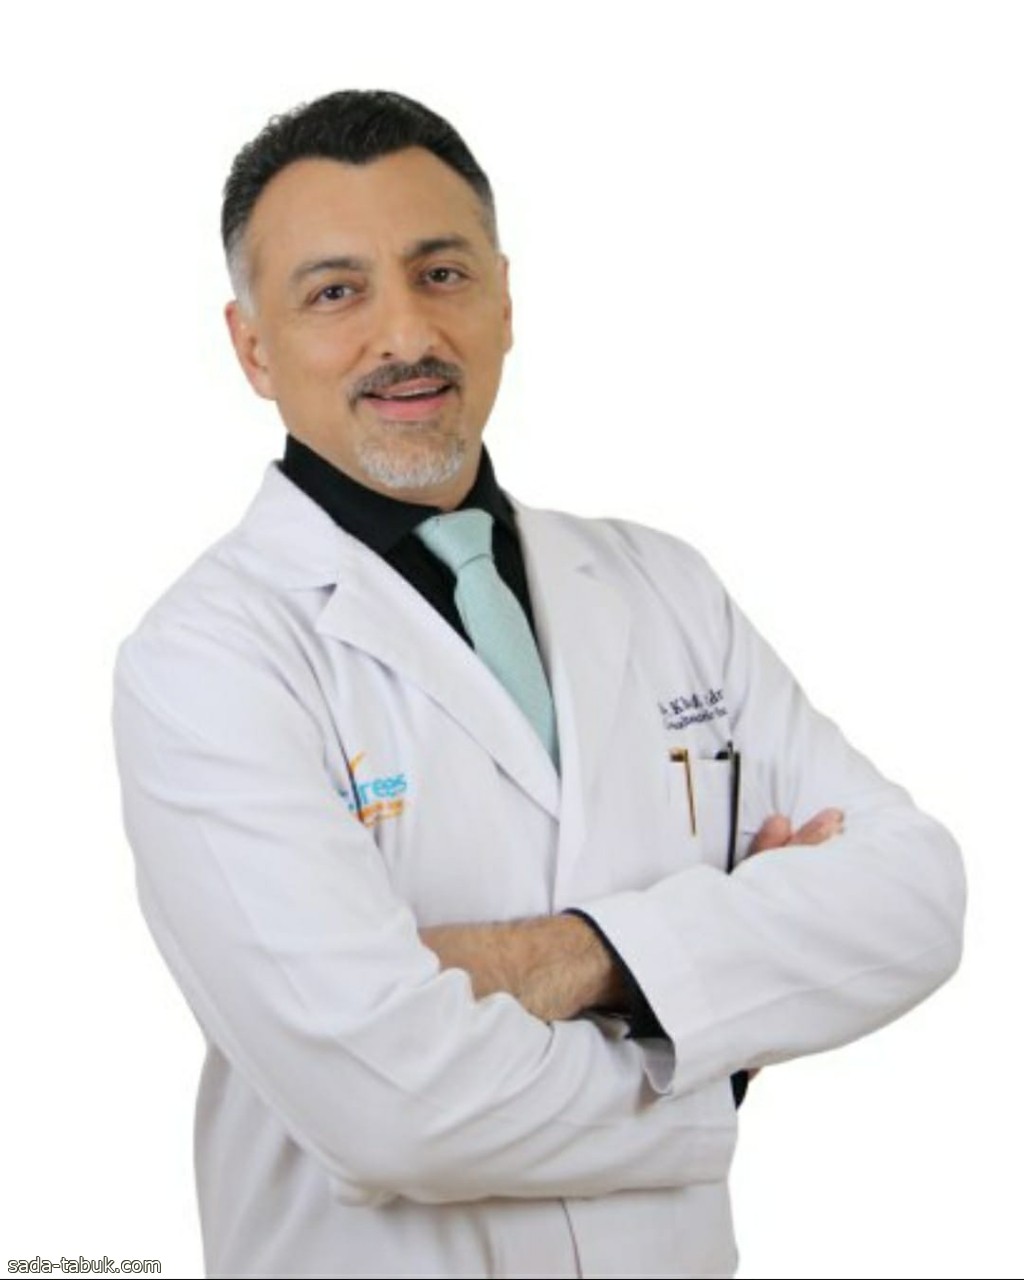 كإنجاز طبي دولي ولأول مرة في السعودية:  الدكتور خالد إدريس يحصل على إعتماد الإتحاد الدولي للسكري